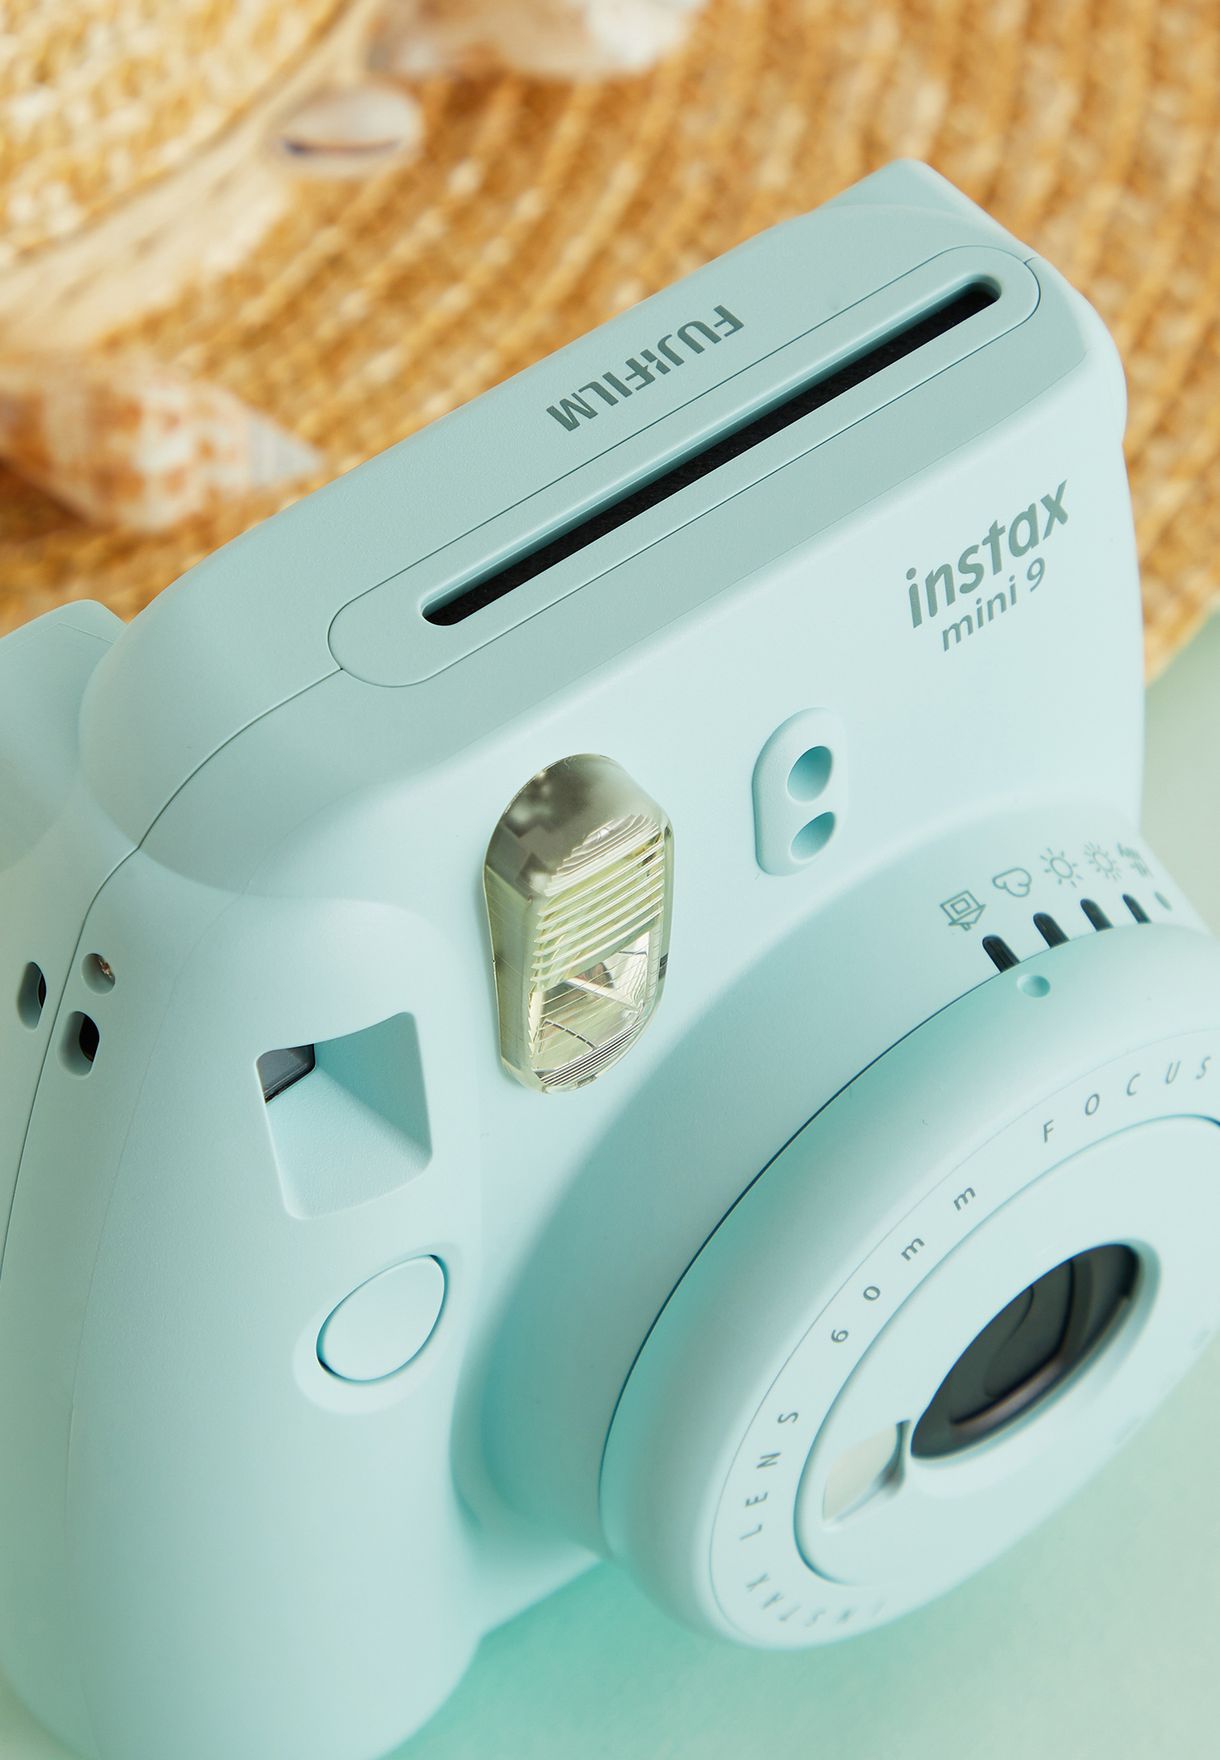 Mini 9 Instax Camera + Film